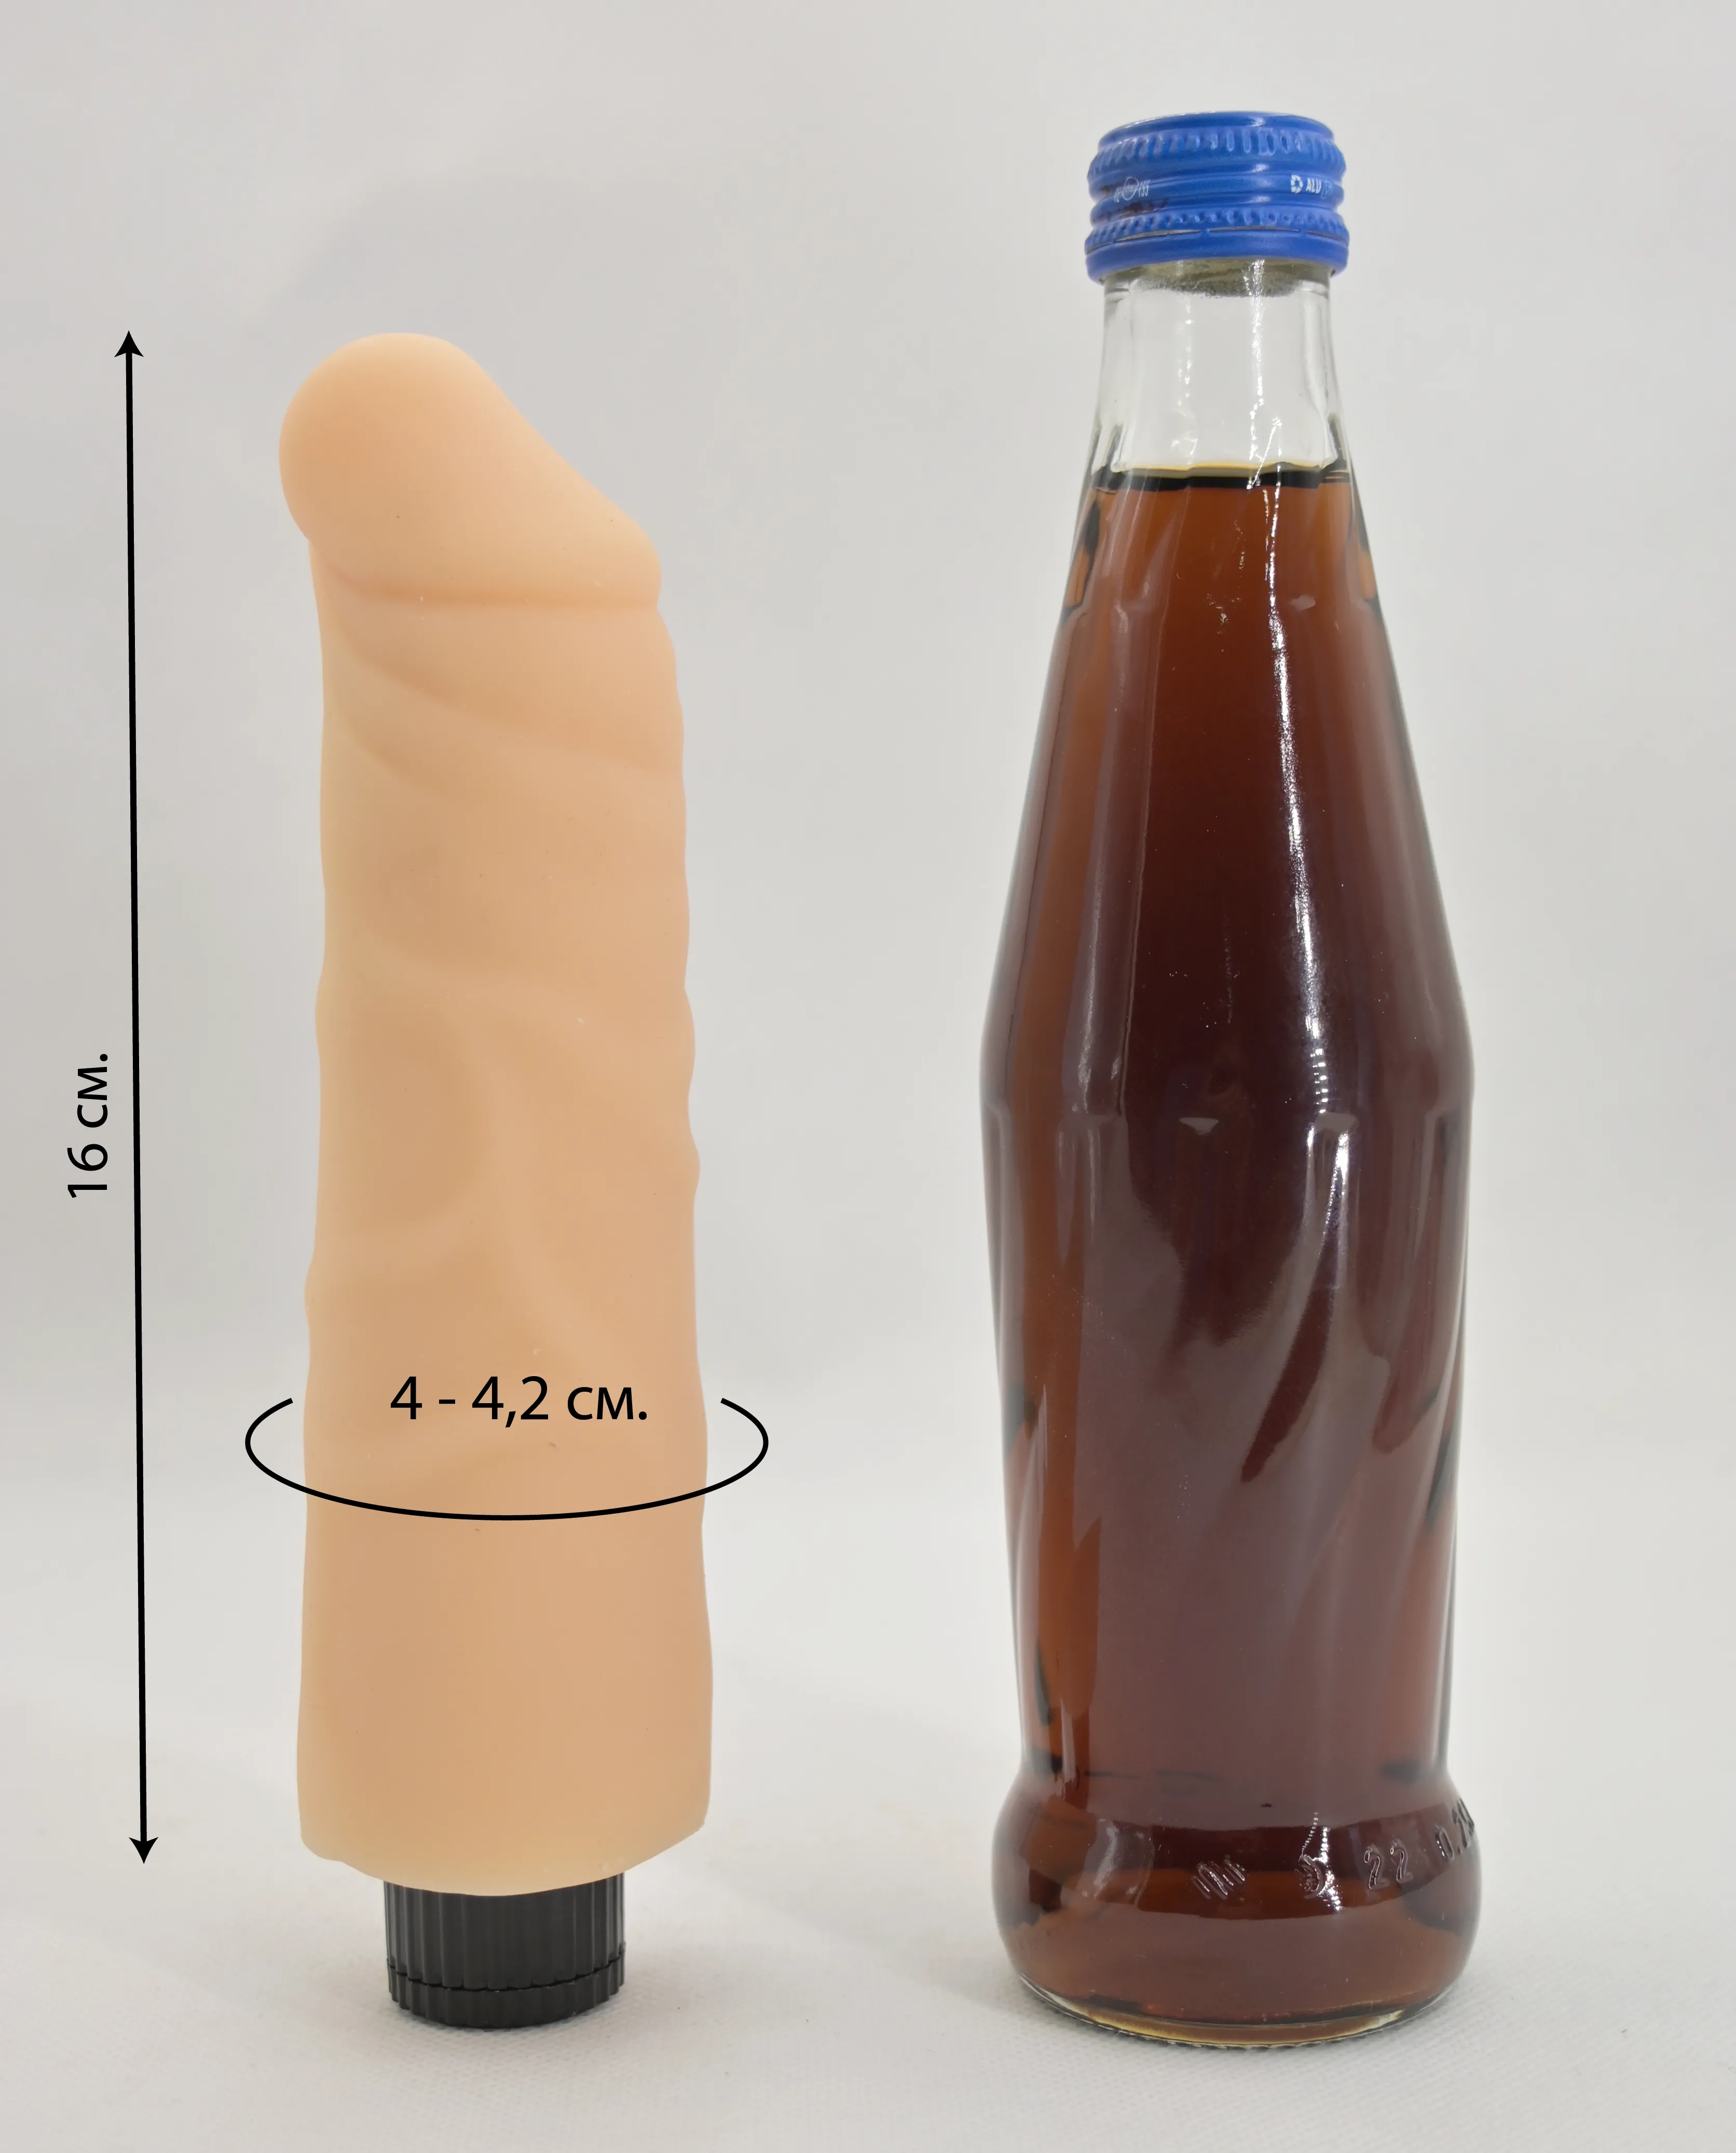 Размеры вибратора и сравнение размера со стеклянной бутылкой 0.33 л.